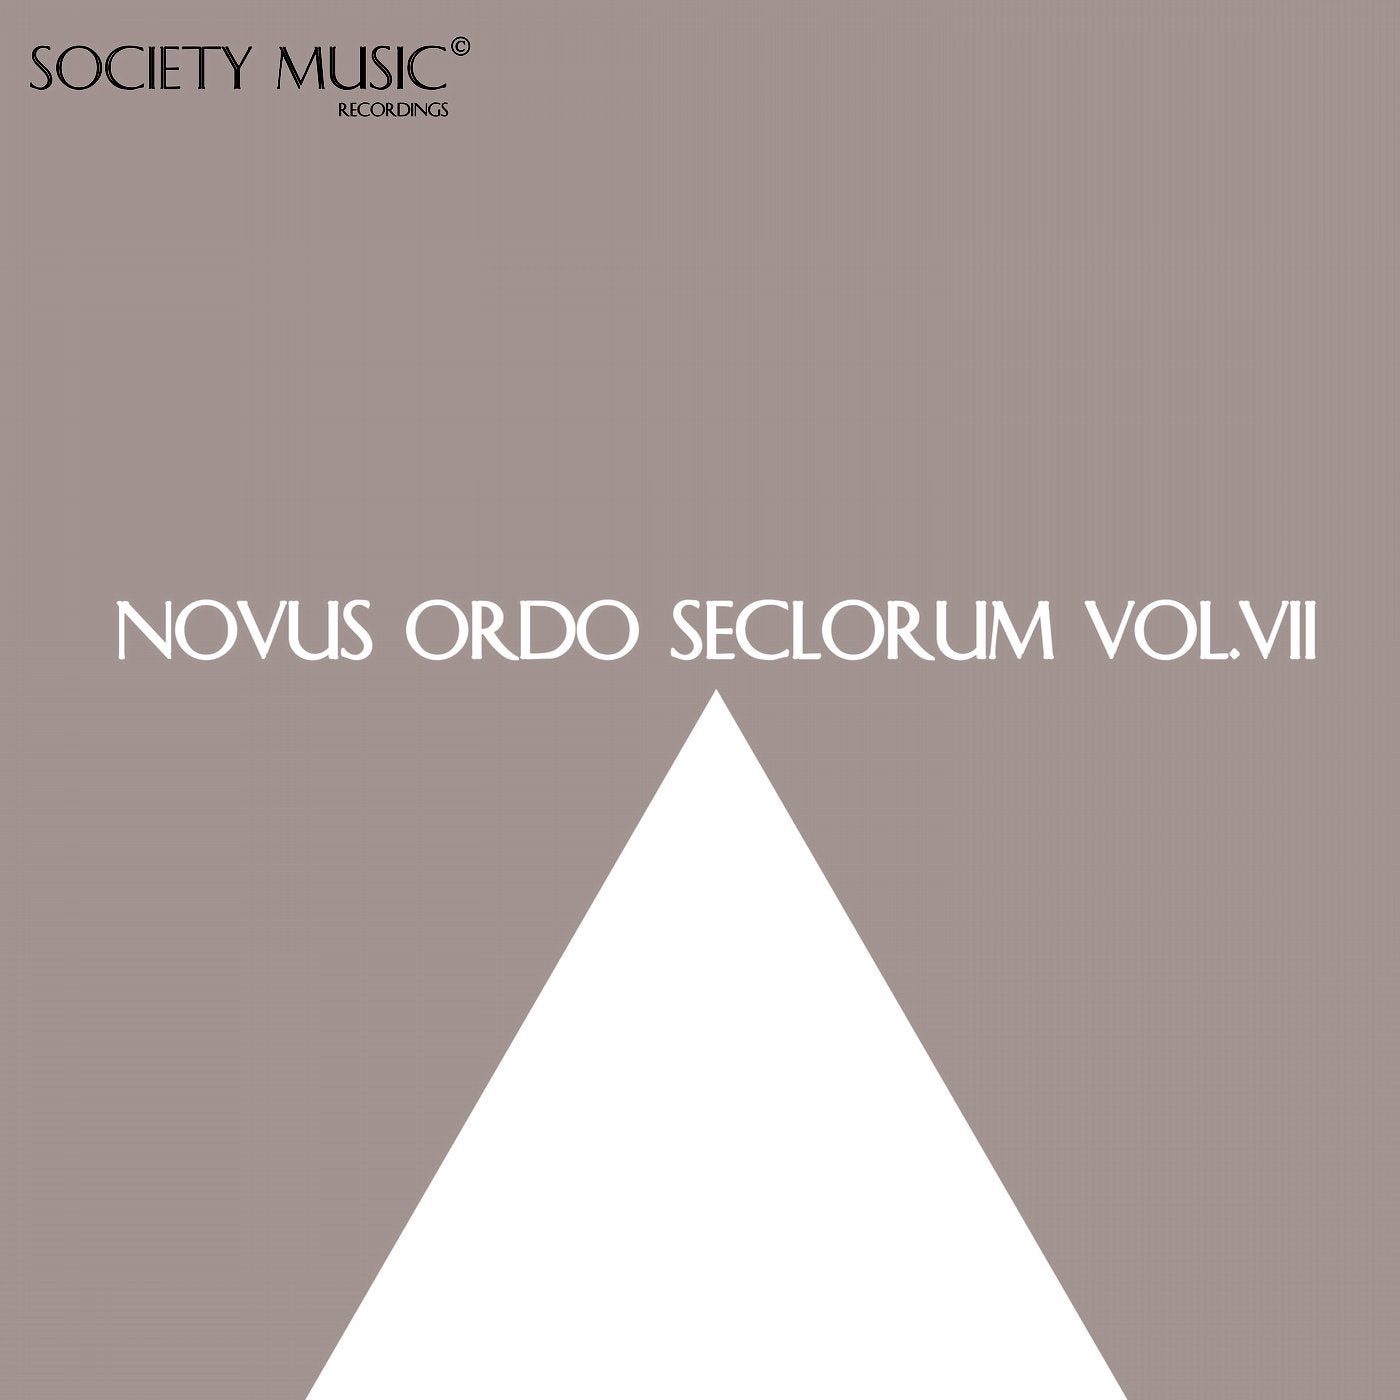 Novus Ordo Seclorum VII